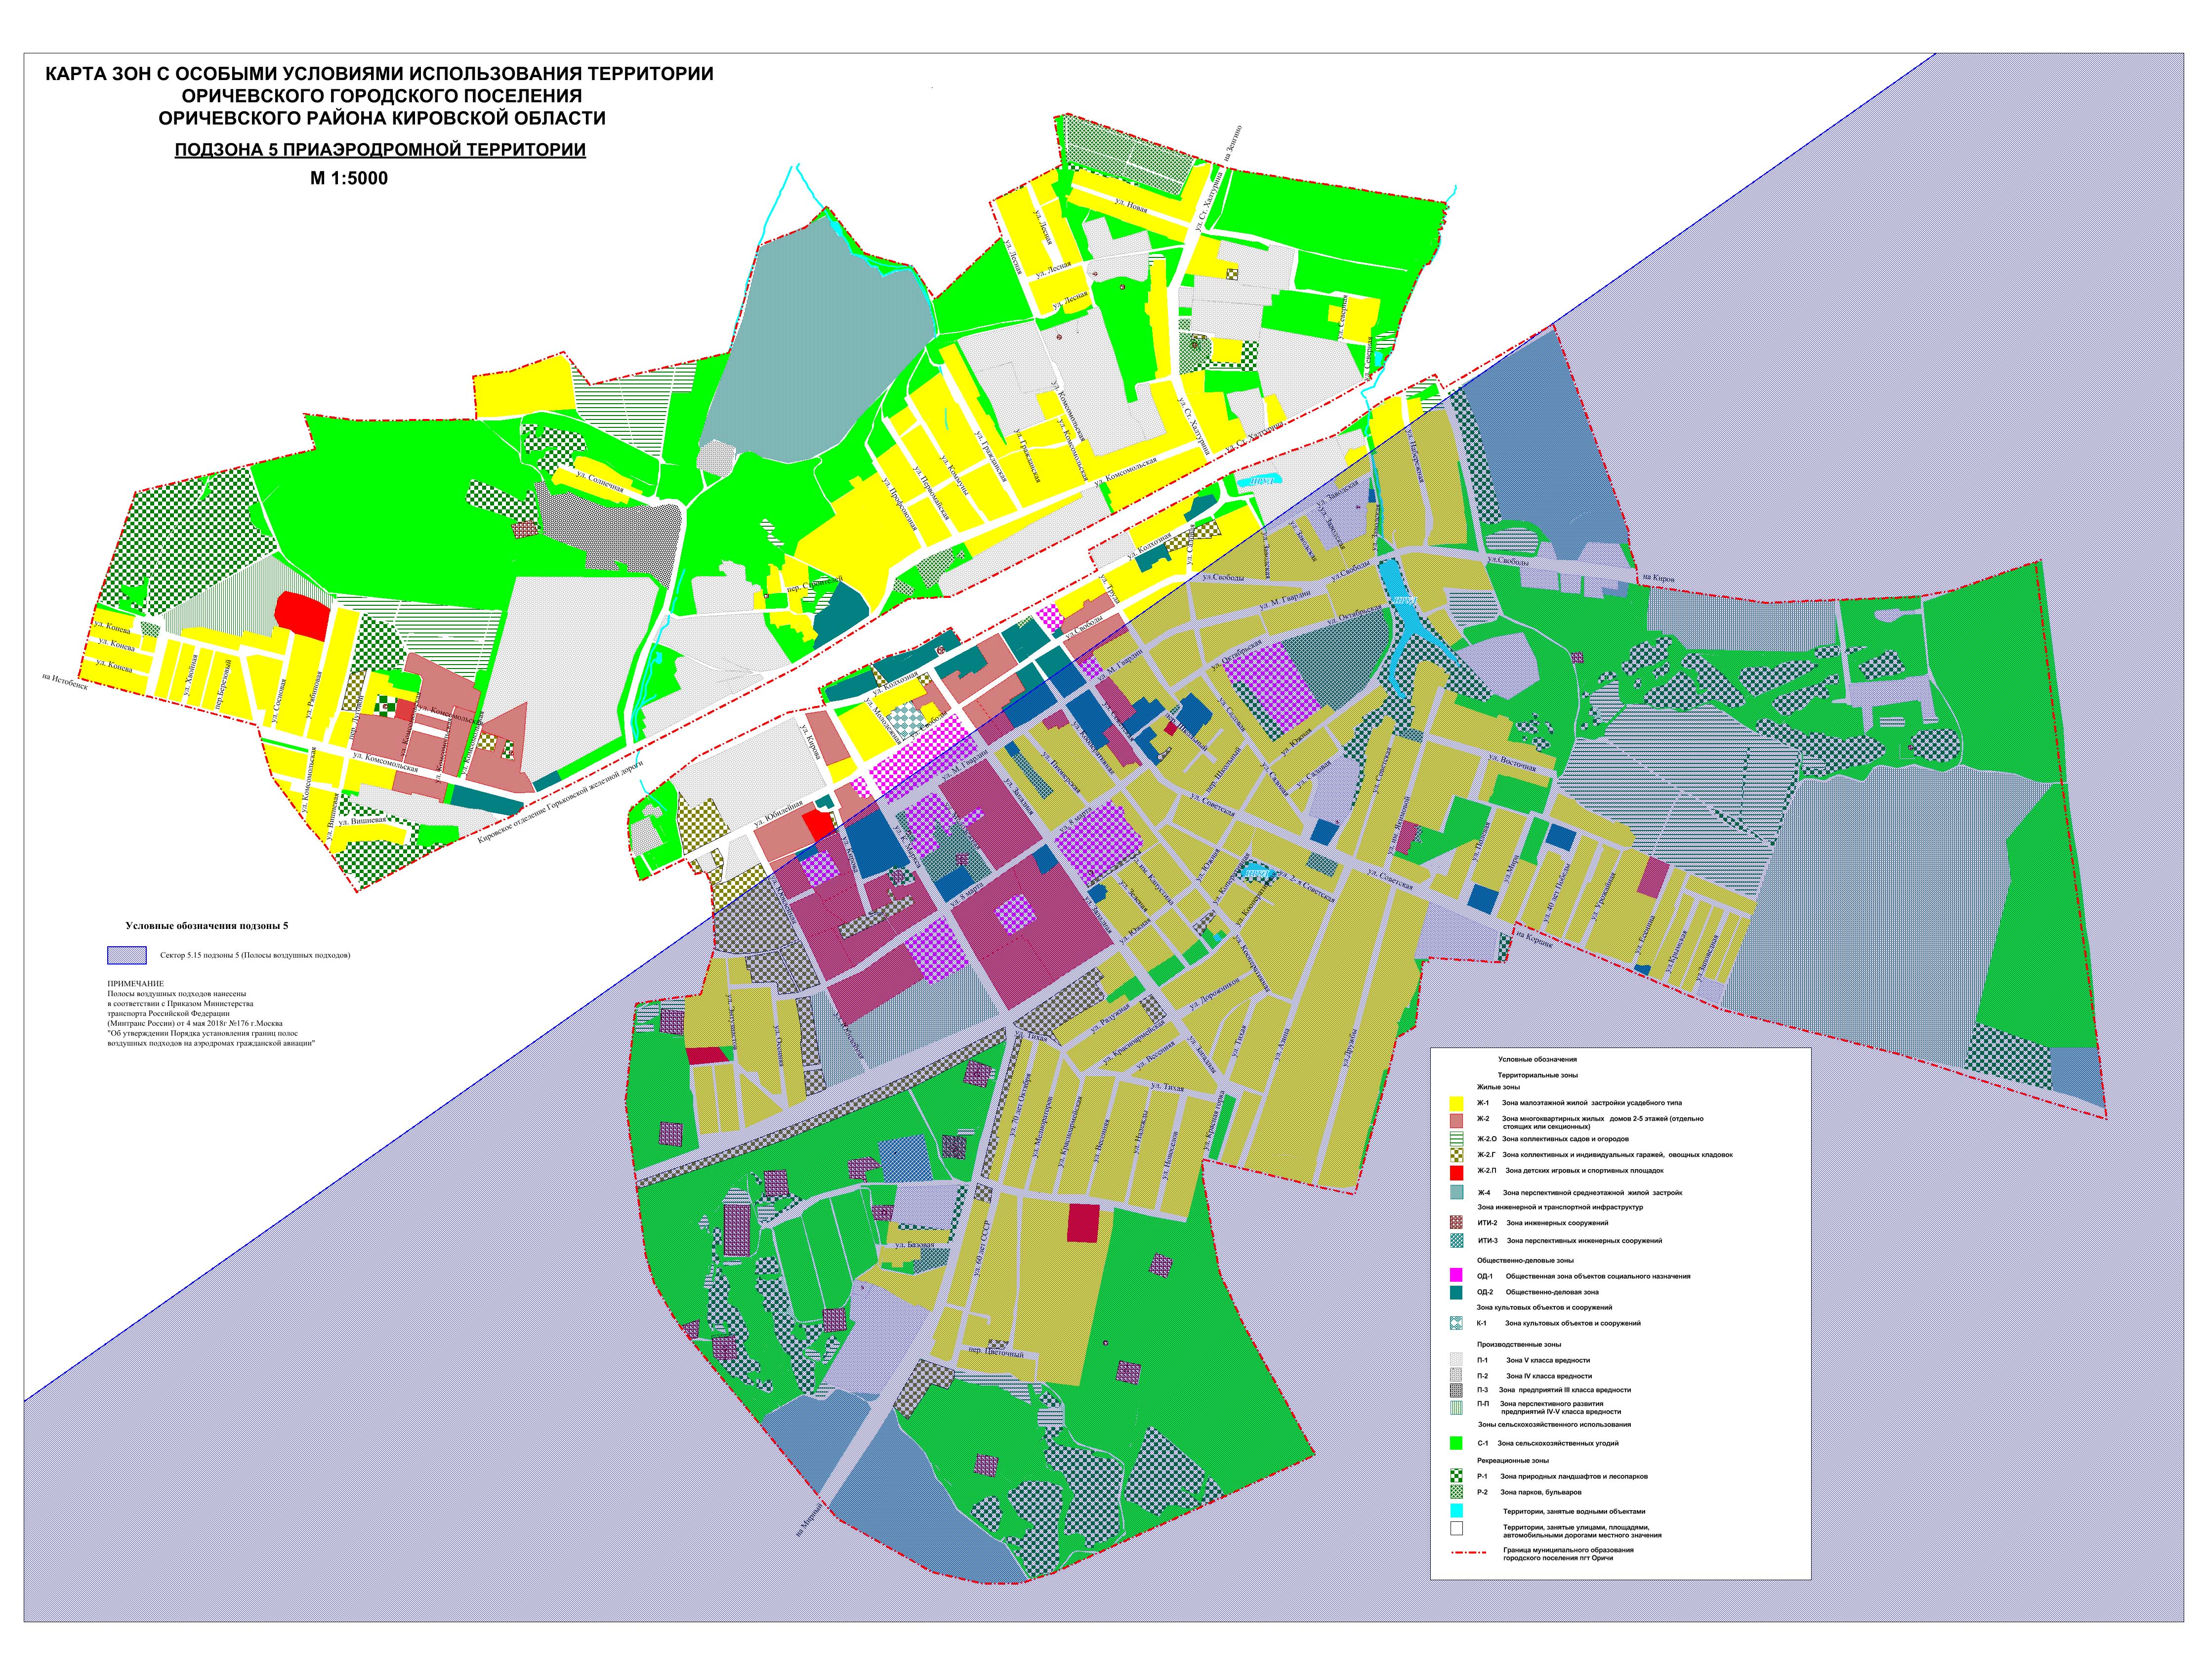 Карты градостроительного зонирования территории